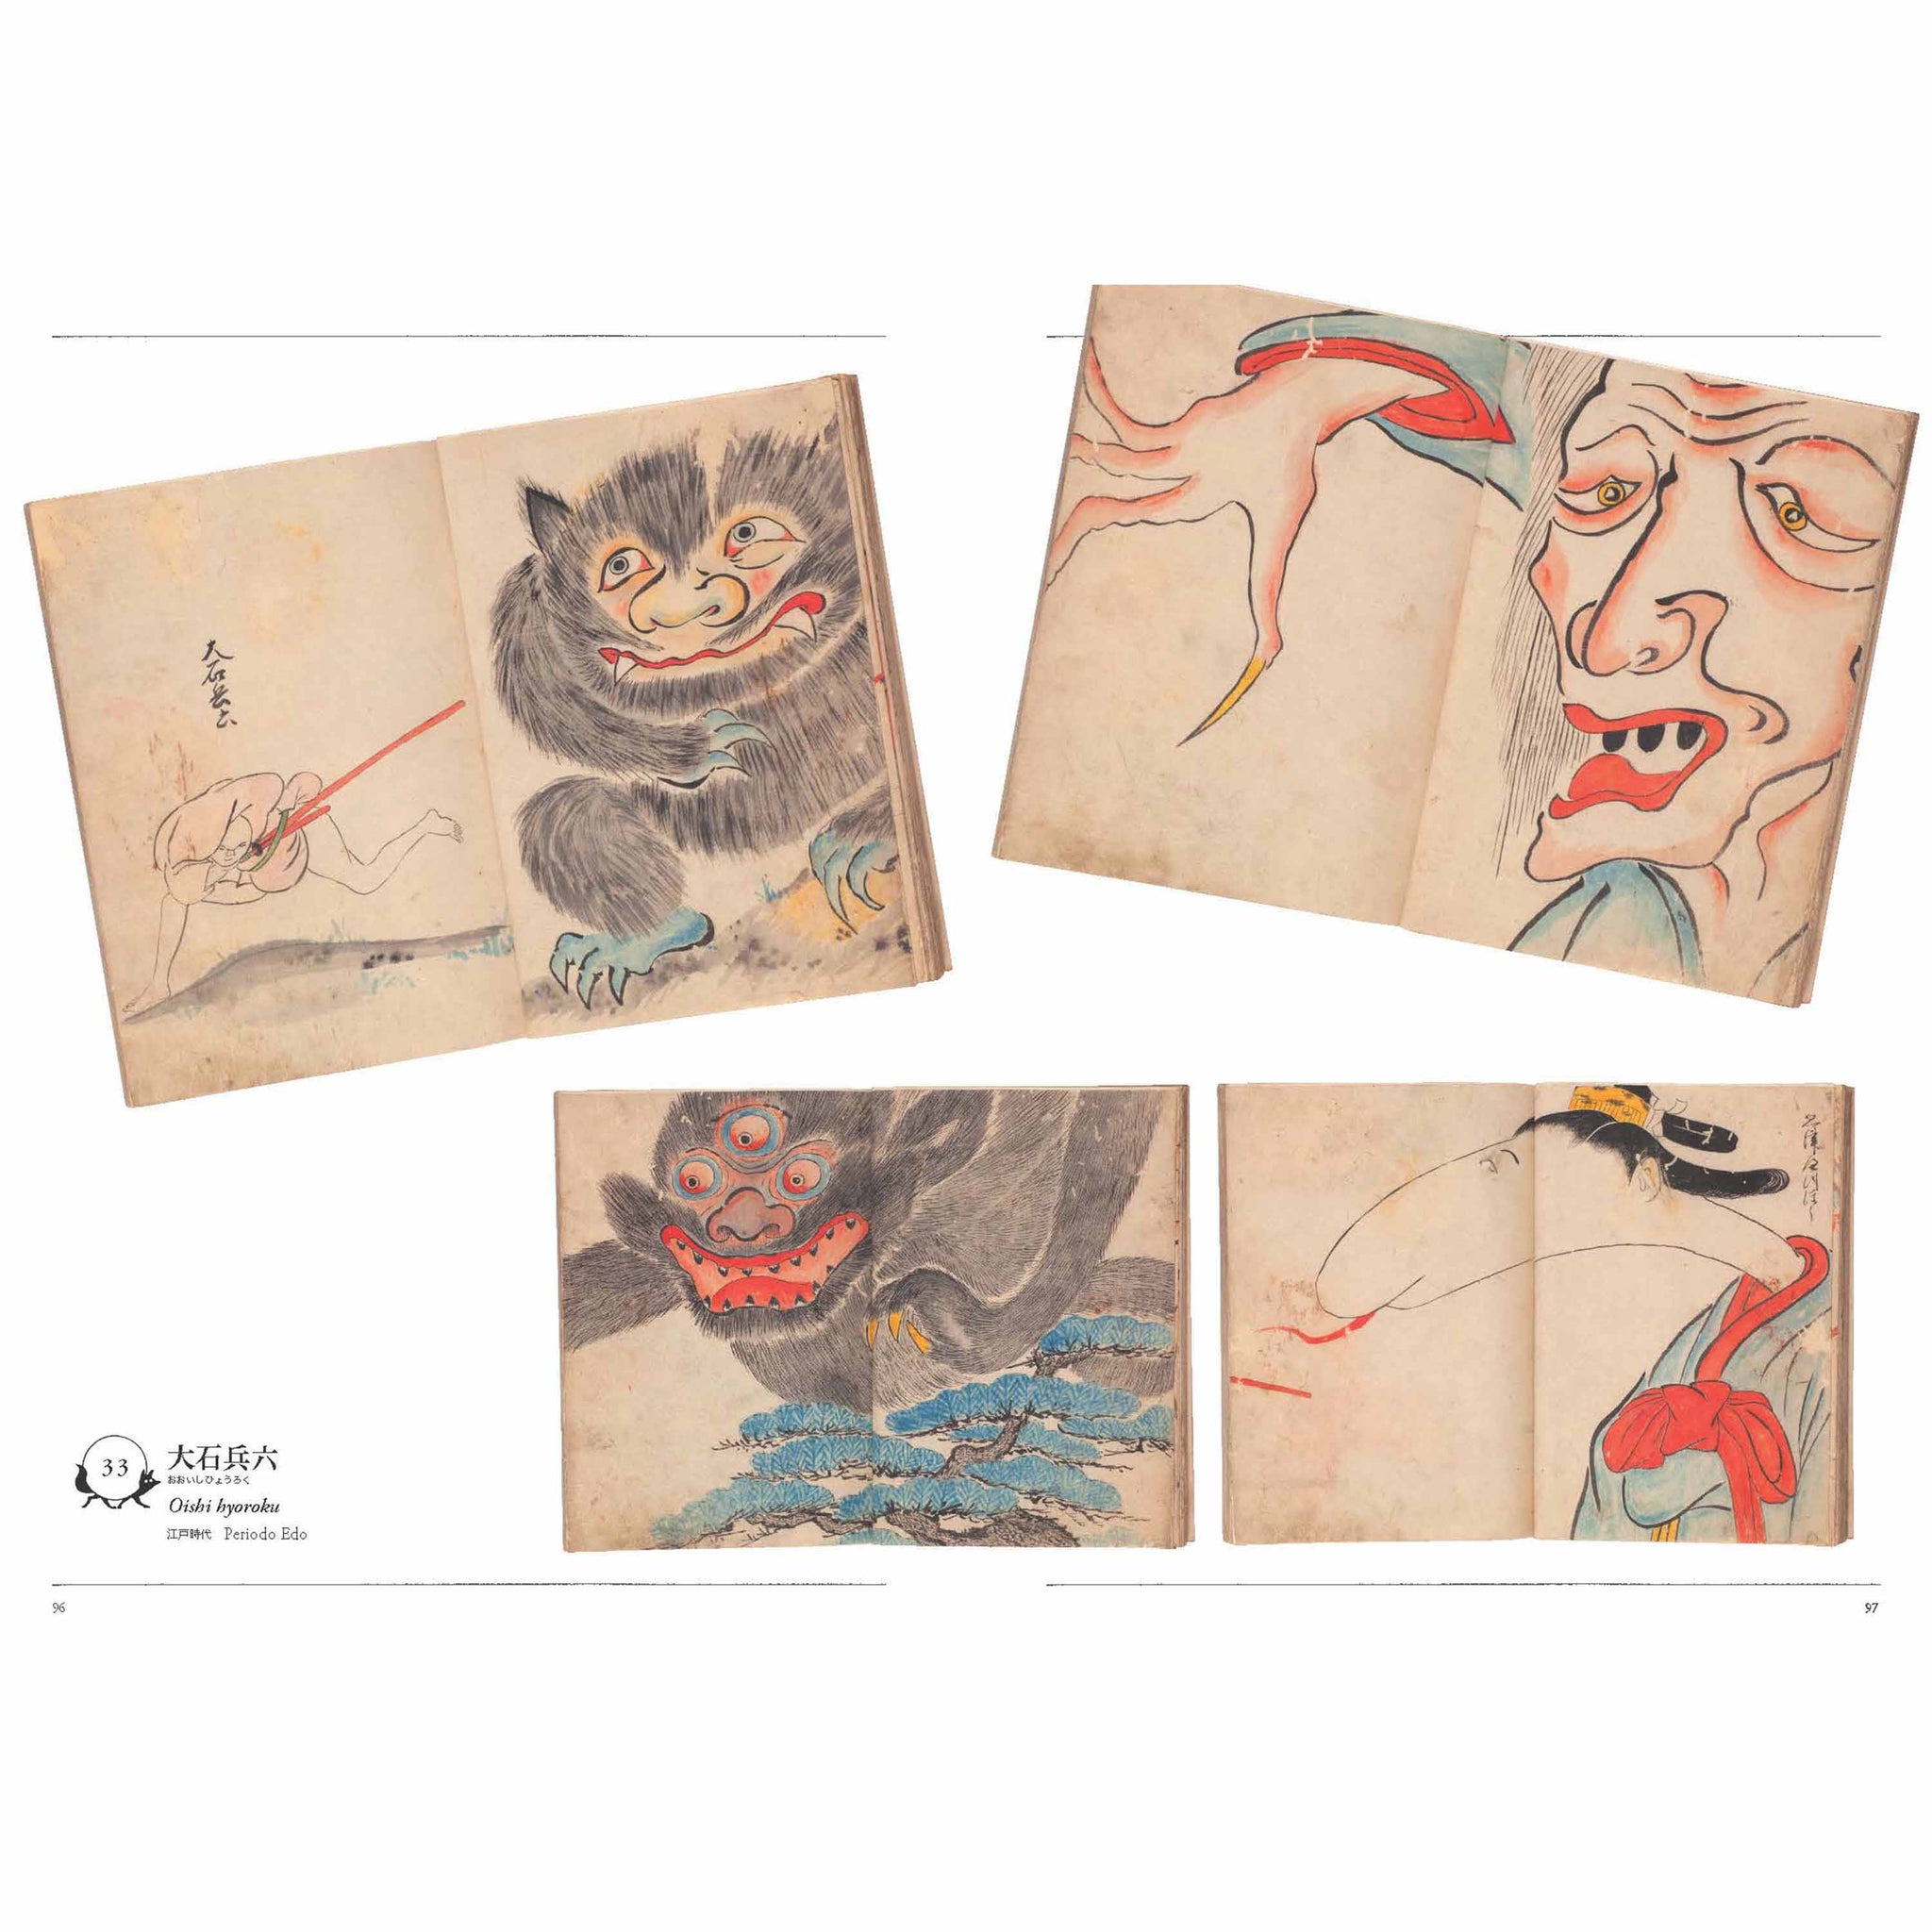 Il museo degli Yōkai - Fantasmi e mostri giapponesi dalla Yumoto Kōichi Collection